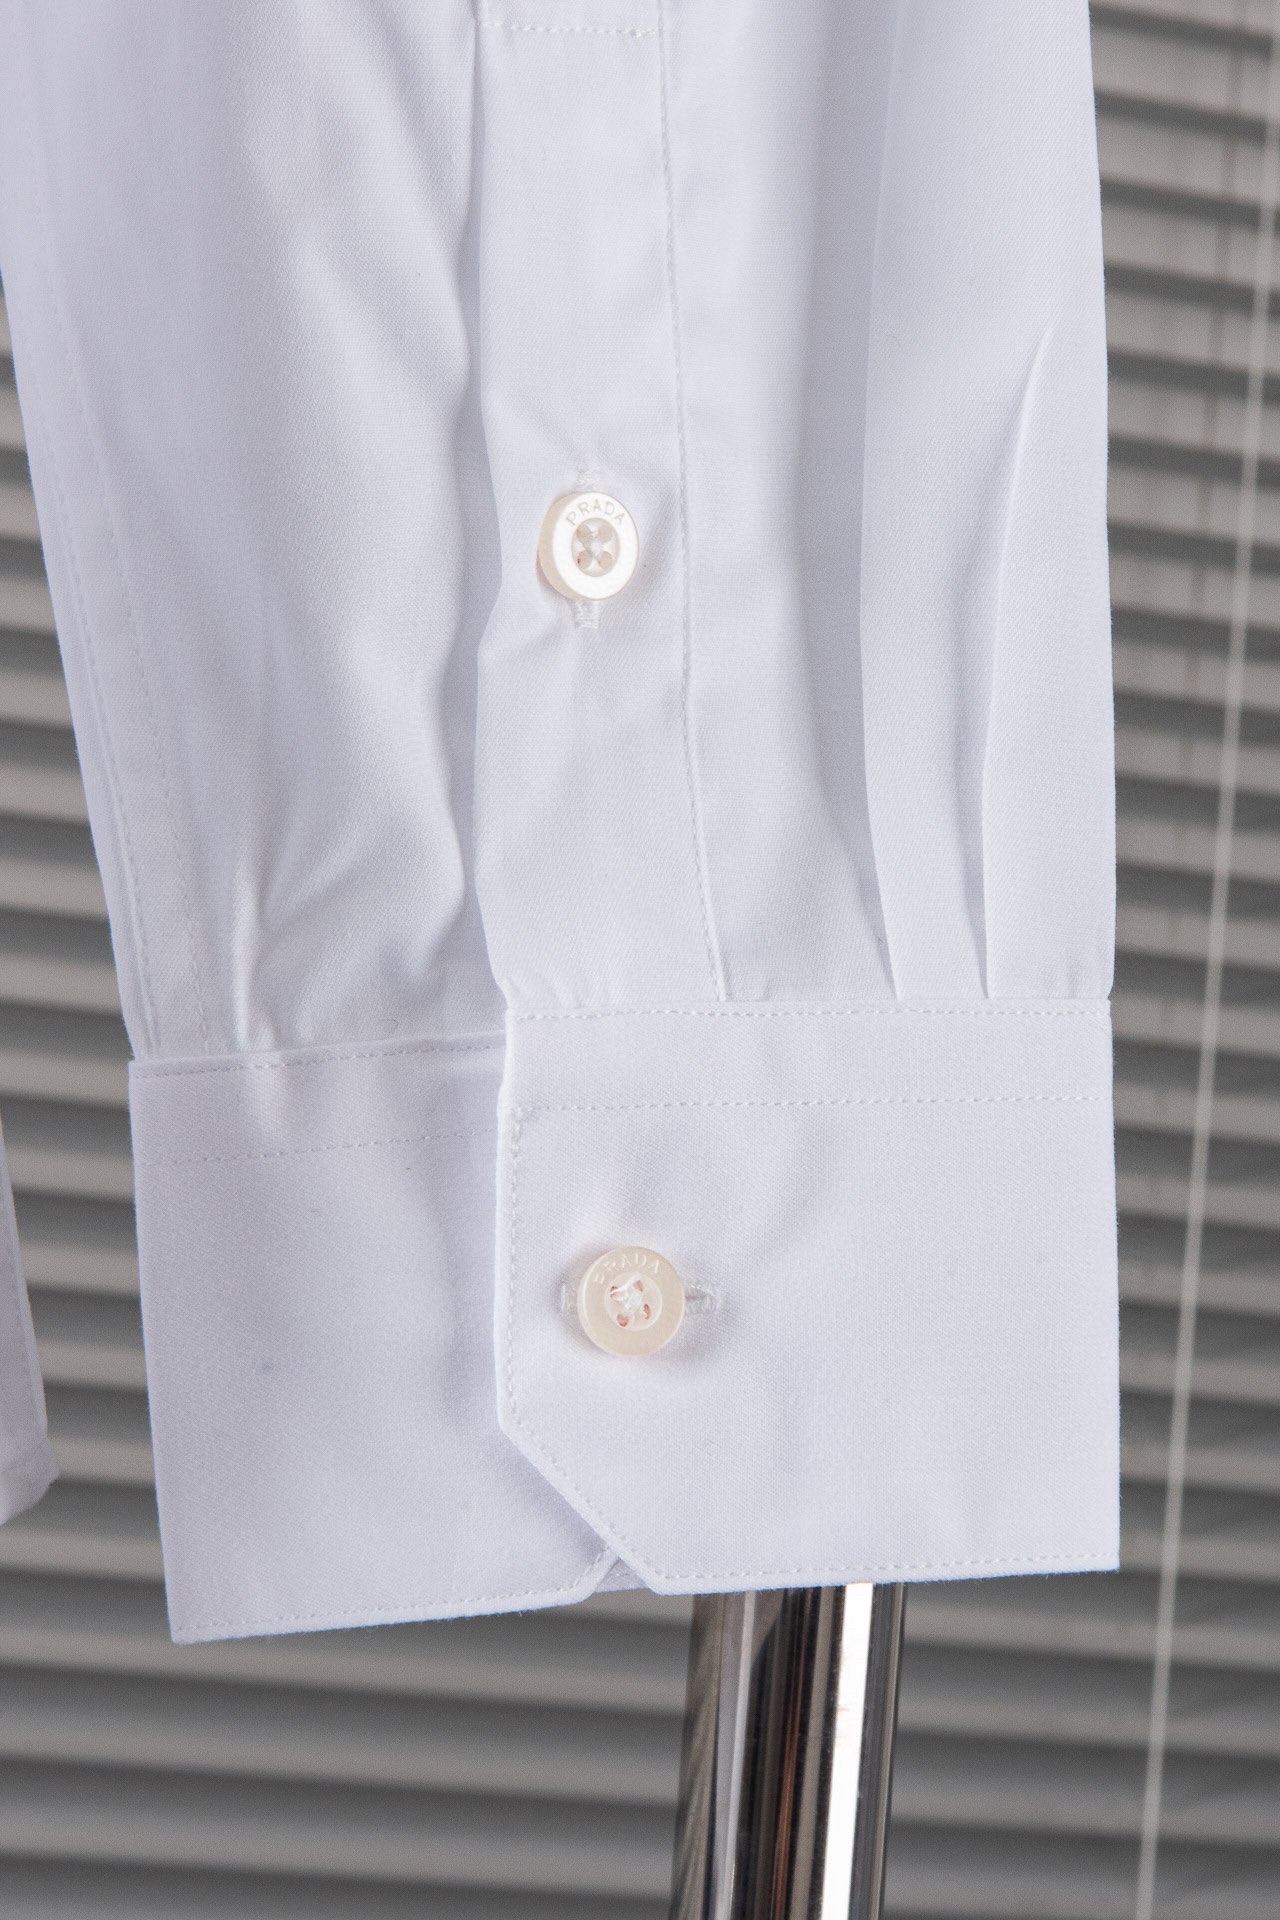 New#PRADA普拉达高品质的珍藏级进口高织棉男士长袖衬衫!24ss春夏新款高品质的奢品者首推珍藏级长